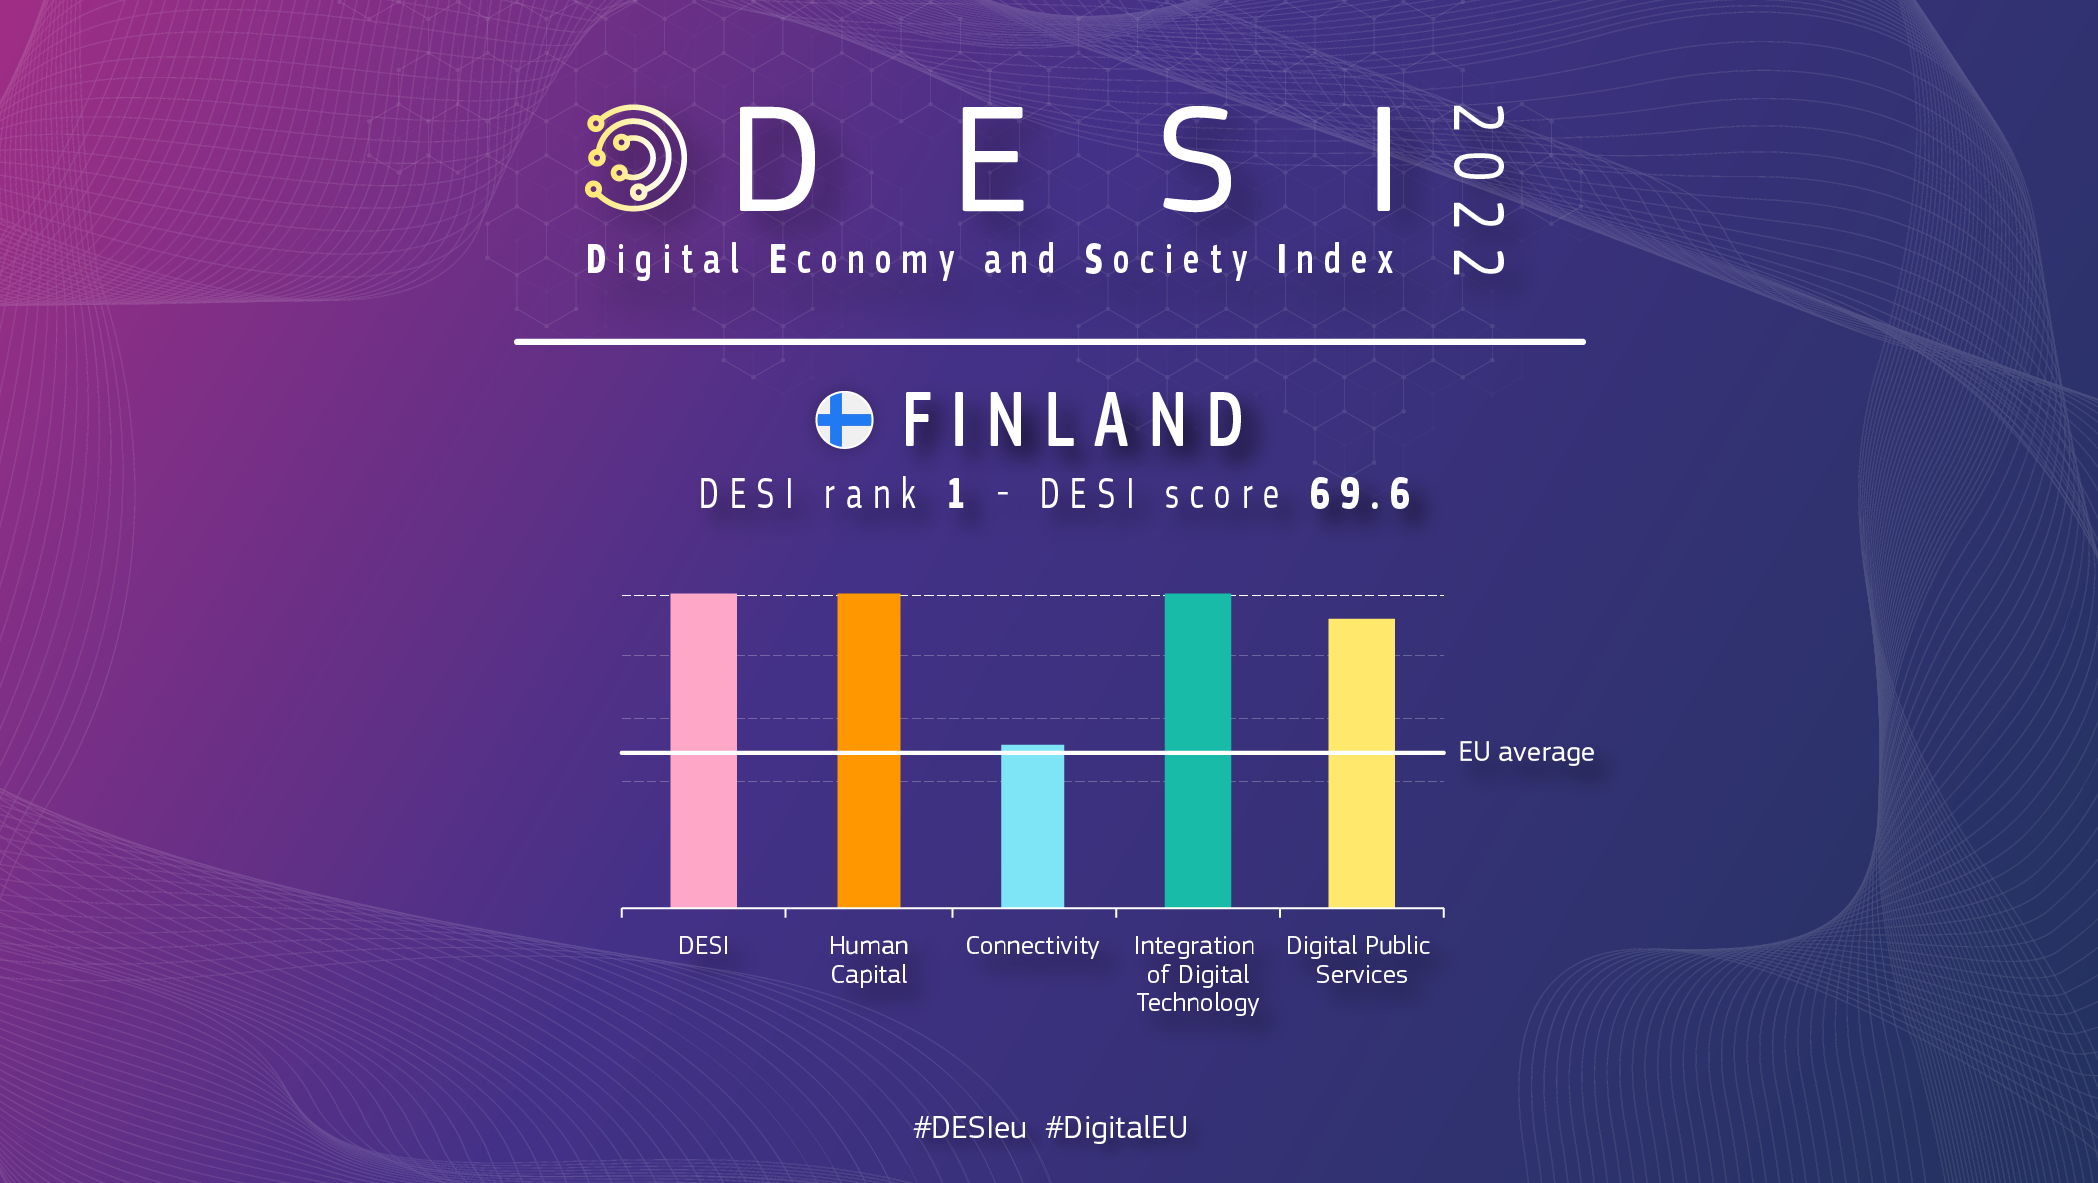 Графичен преглед на Финландия в DESI, показващ класиране от 1 и 69.6